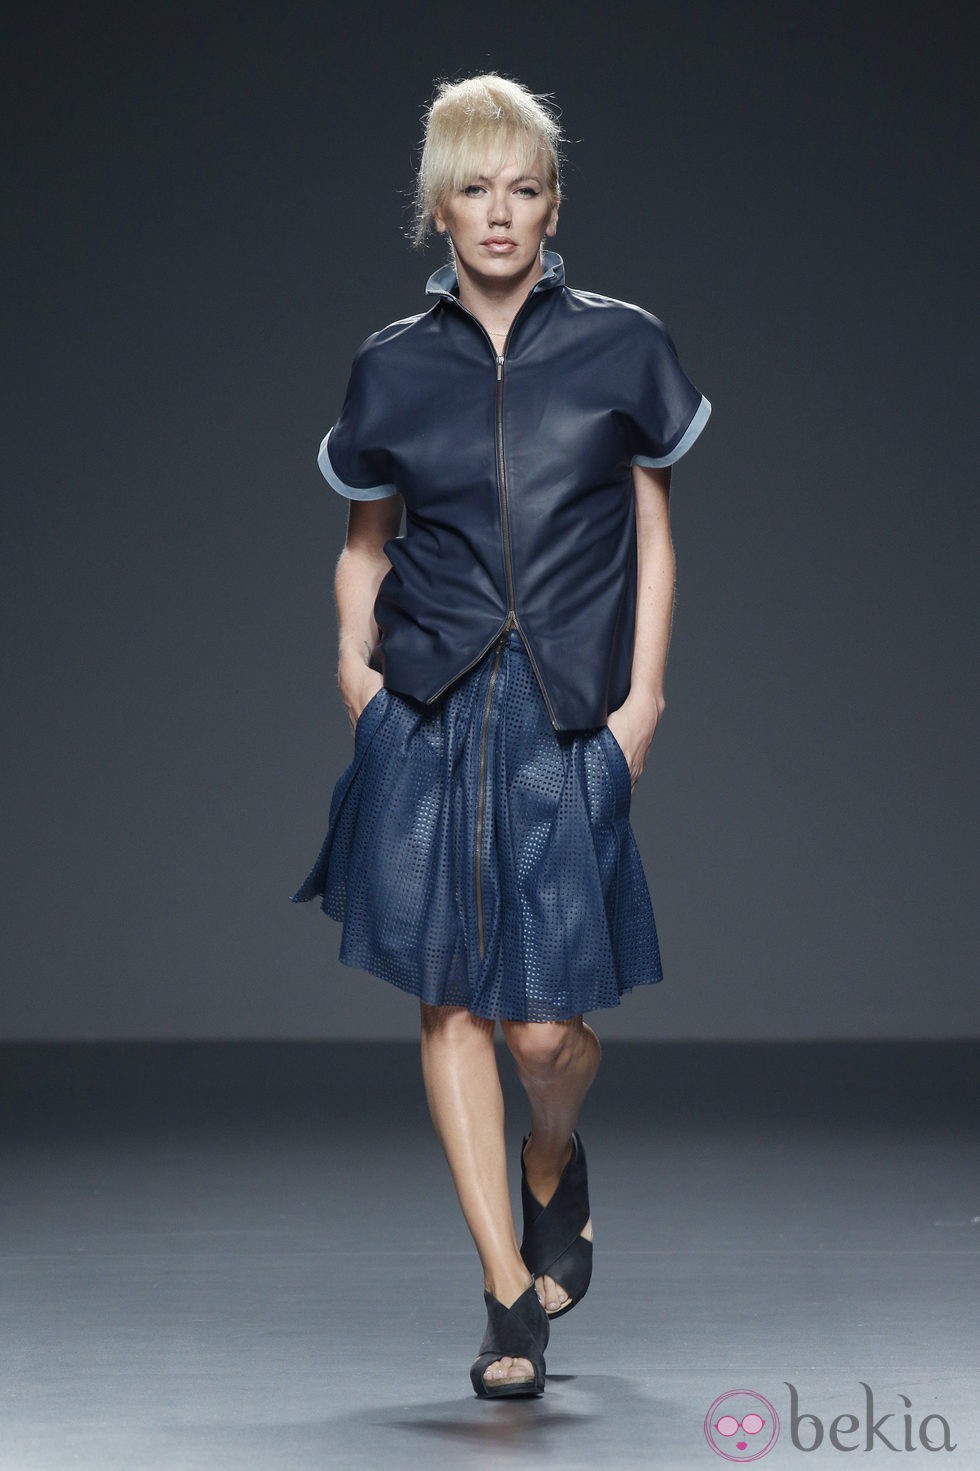 Chaqueta y falda azul de piel de primavera/verano 2015 de Etxeberría en Madrid Fashion Week